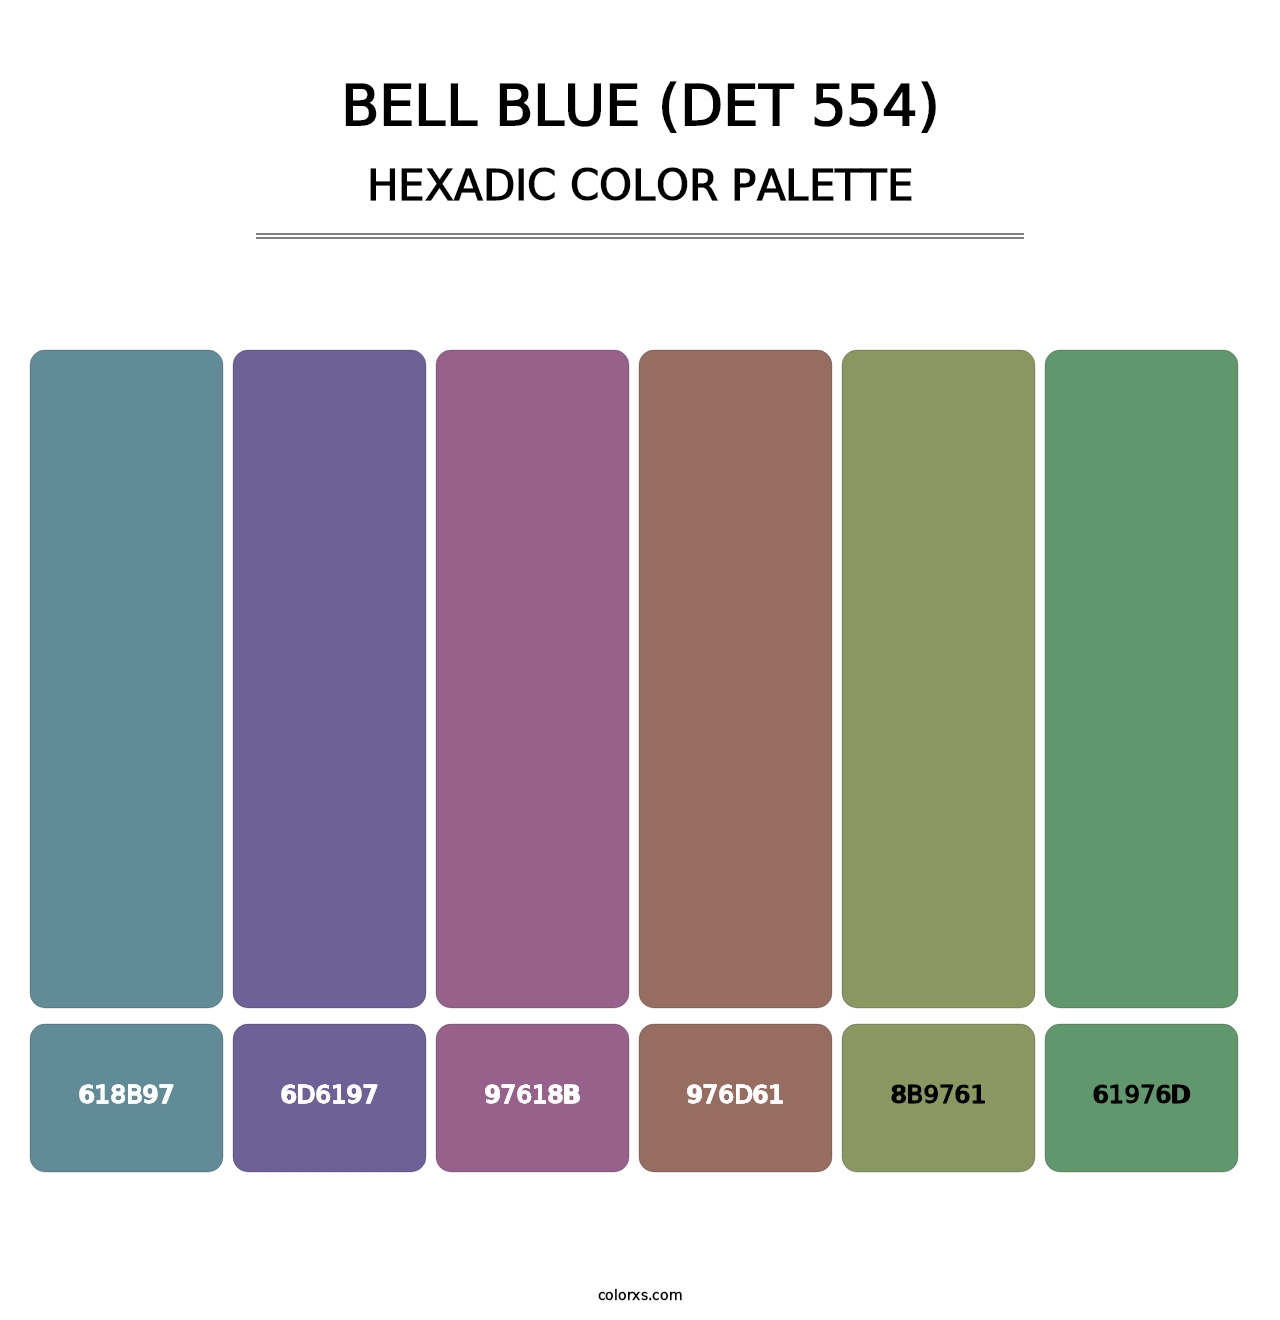 Bell Blue (DET 554) - Hexadic Color Palette